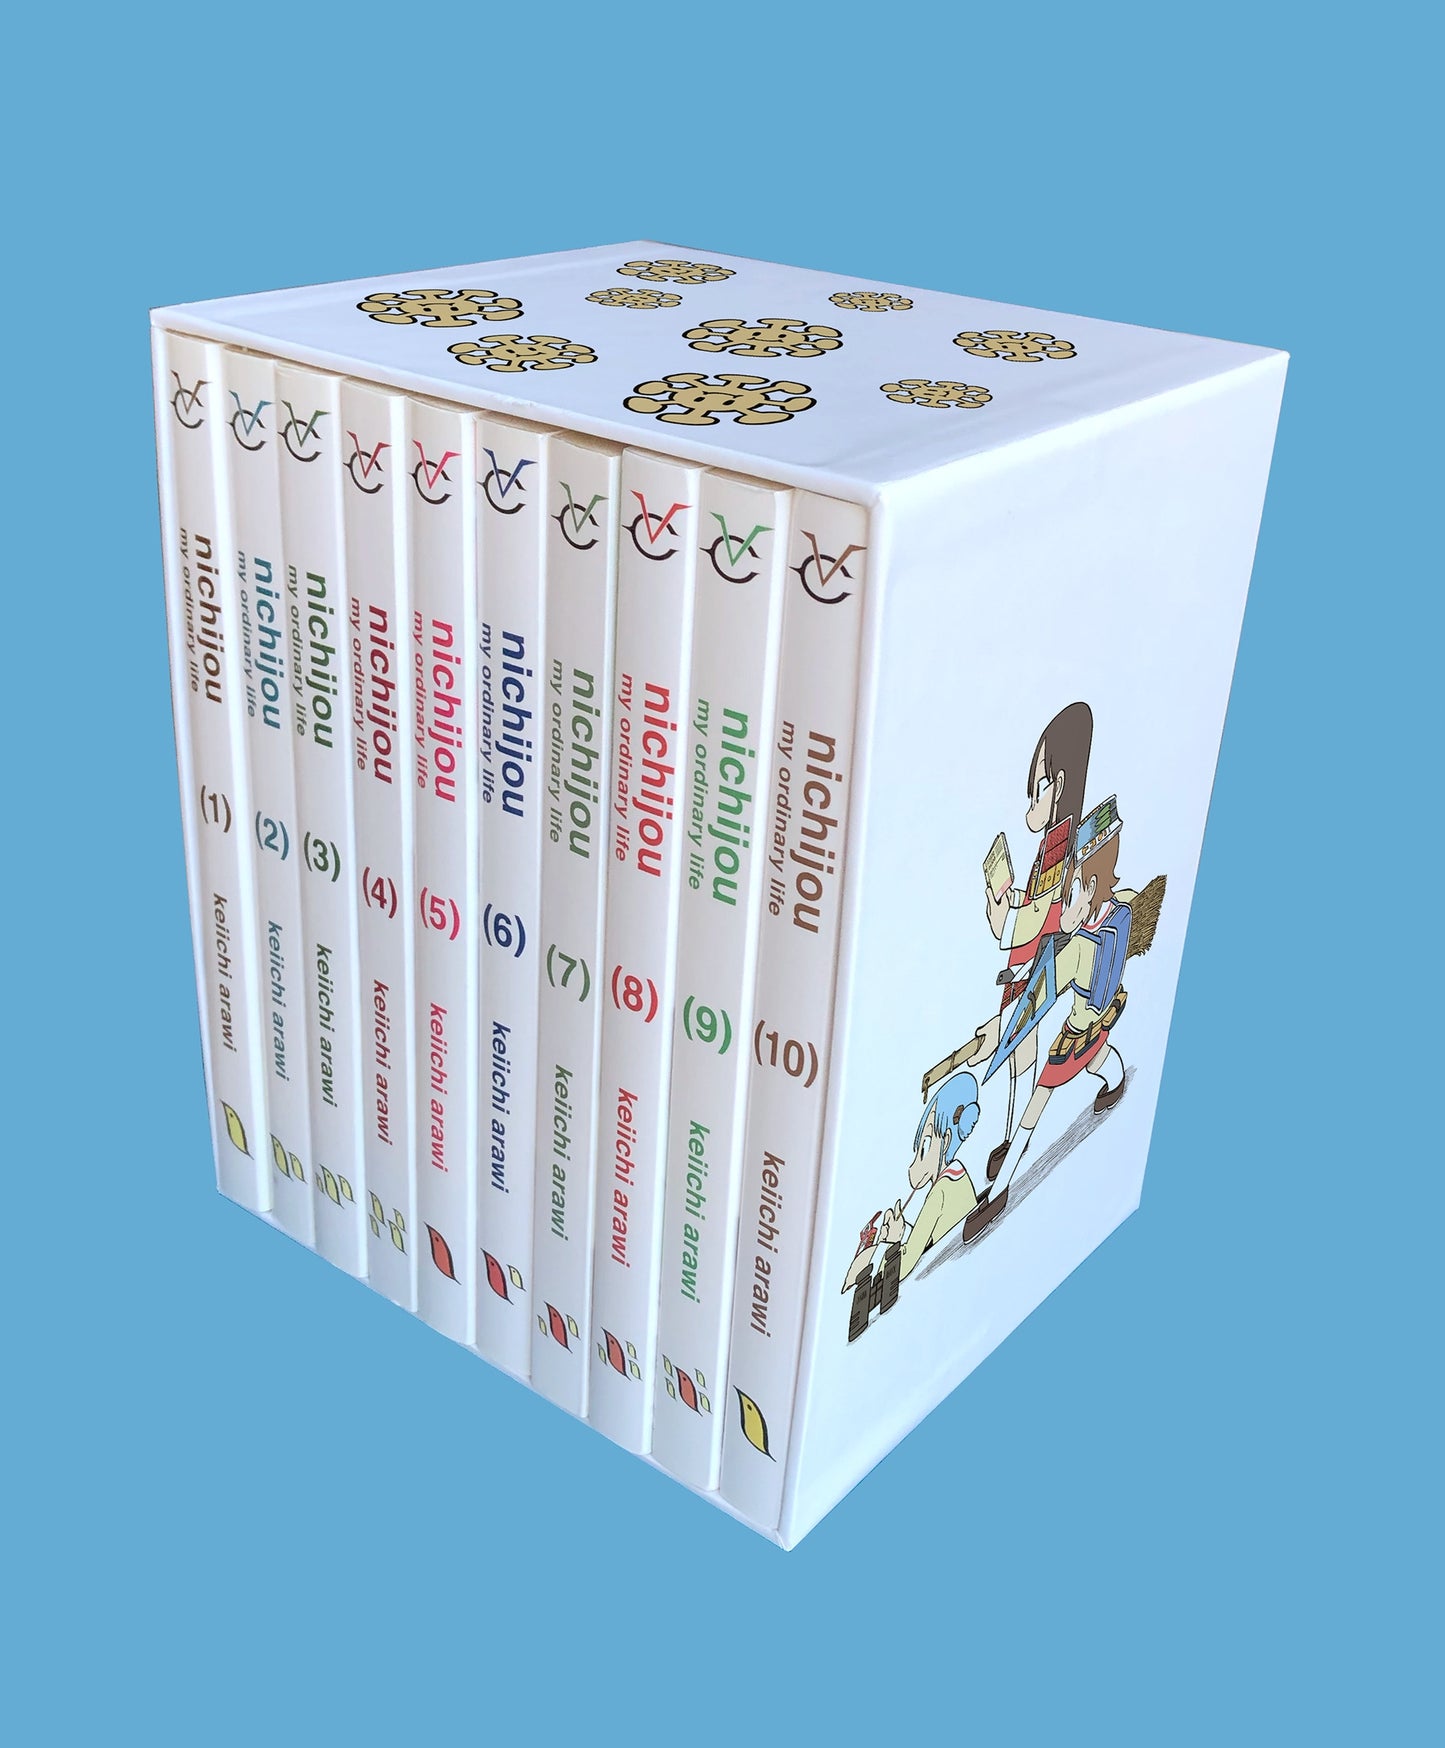 nichijou 15th anniversary box set - Manga Warehouse